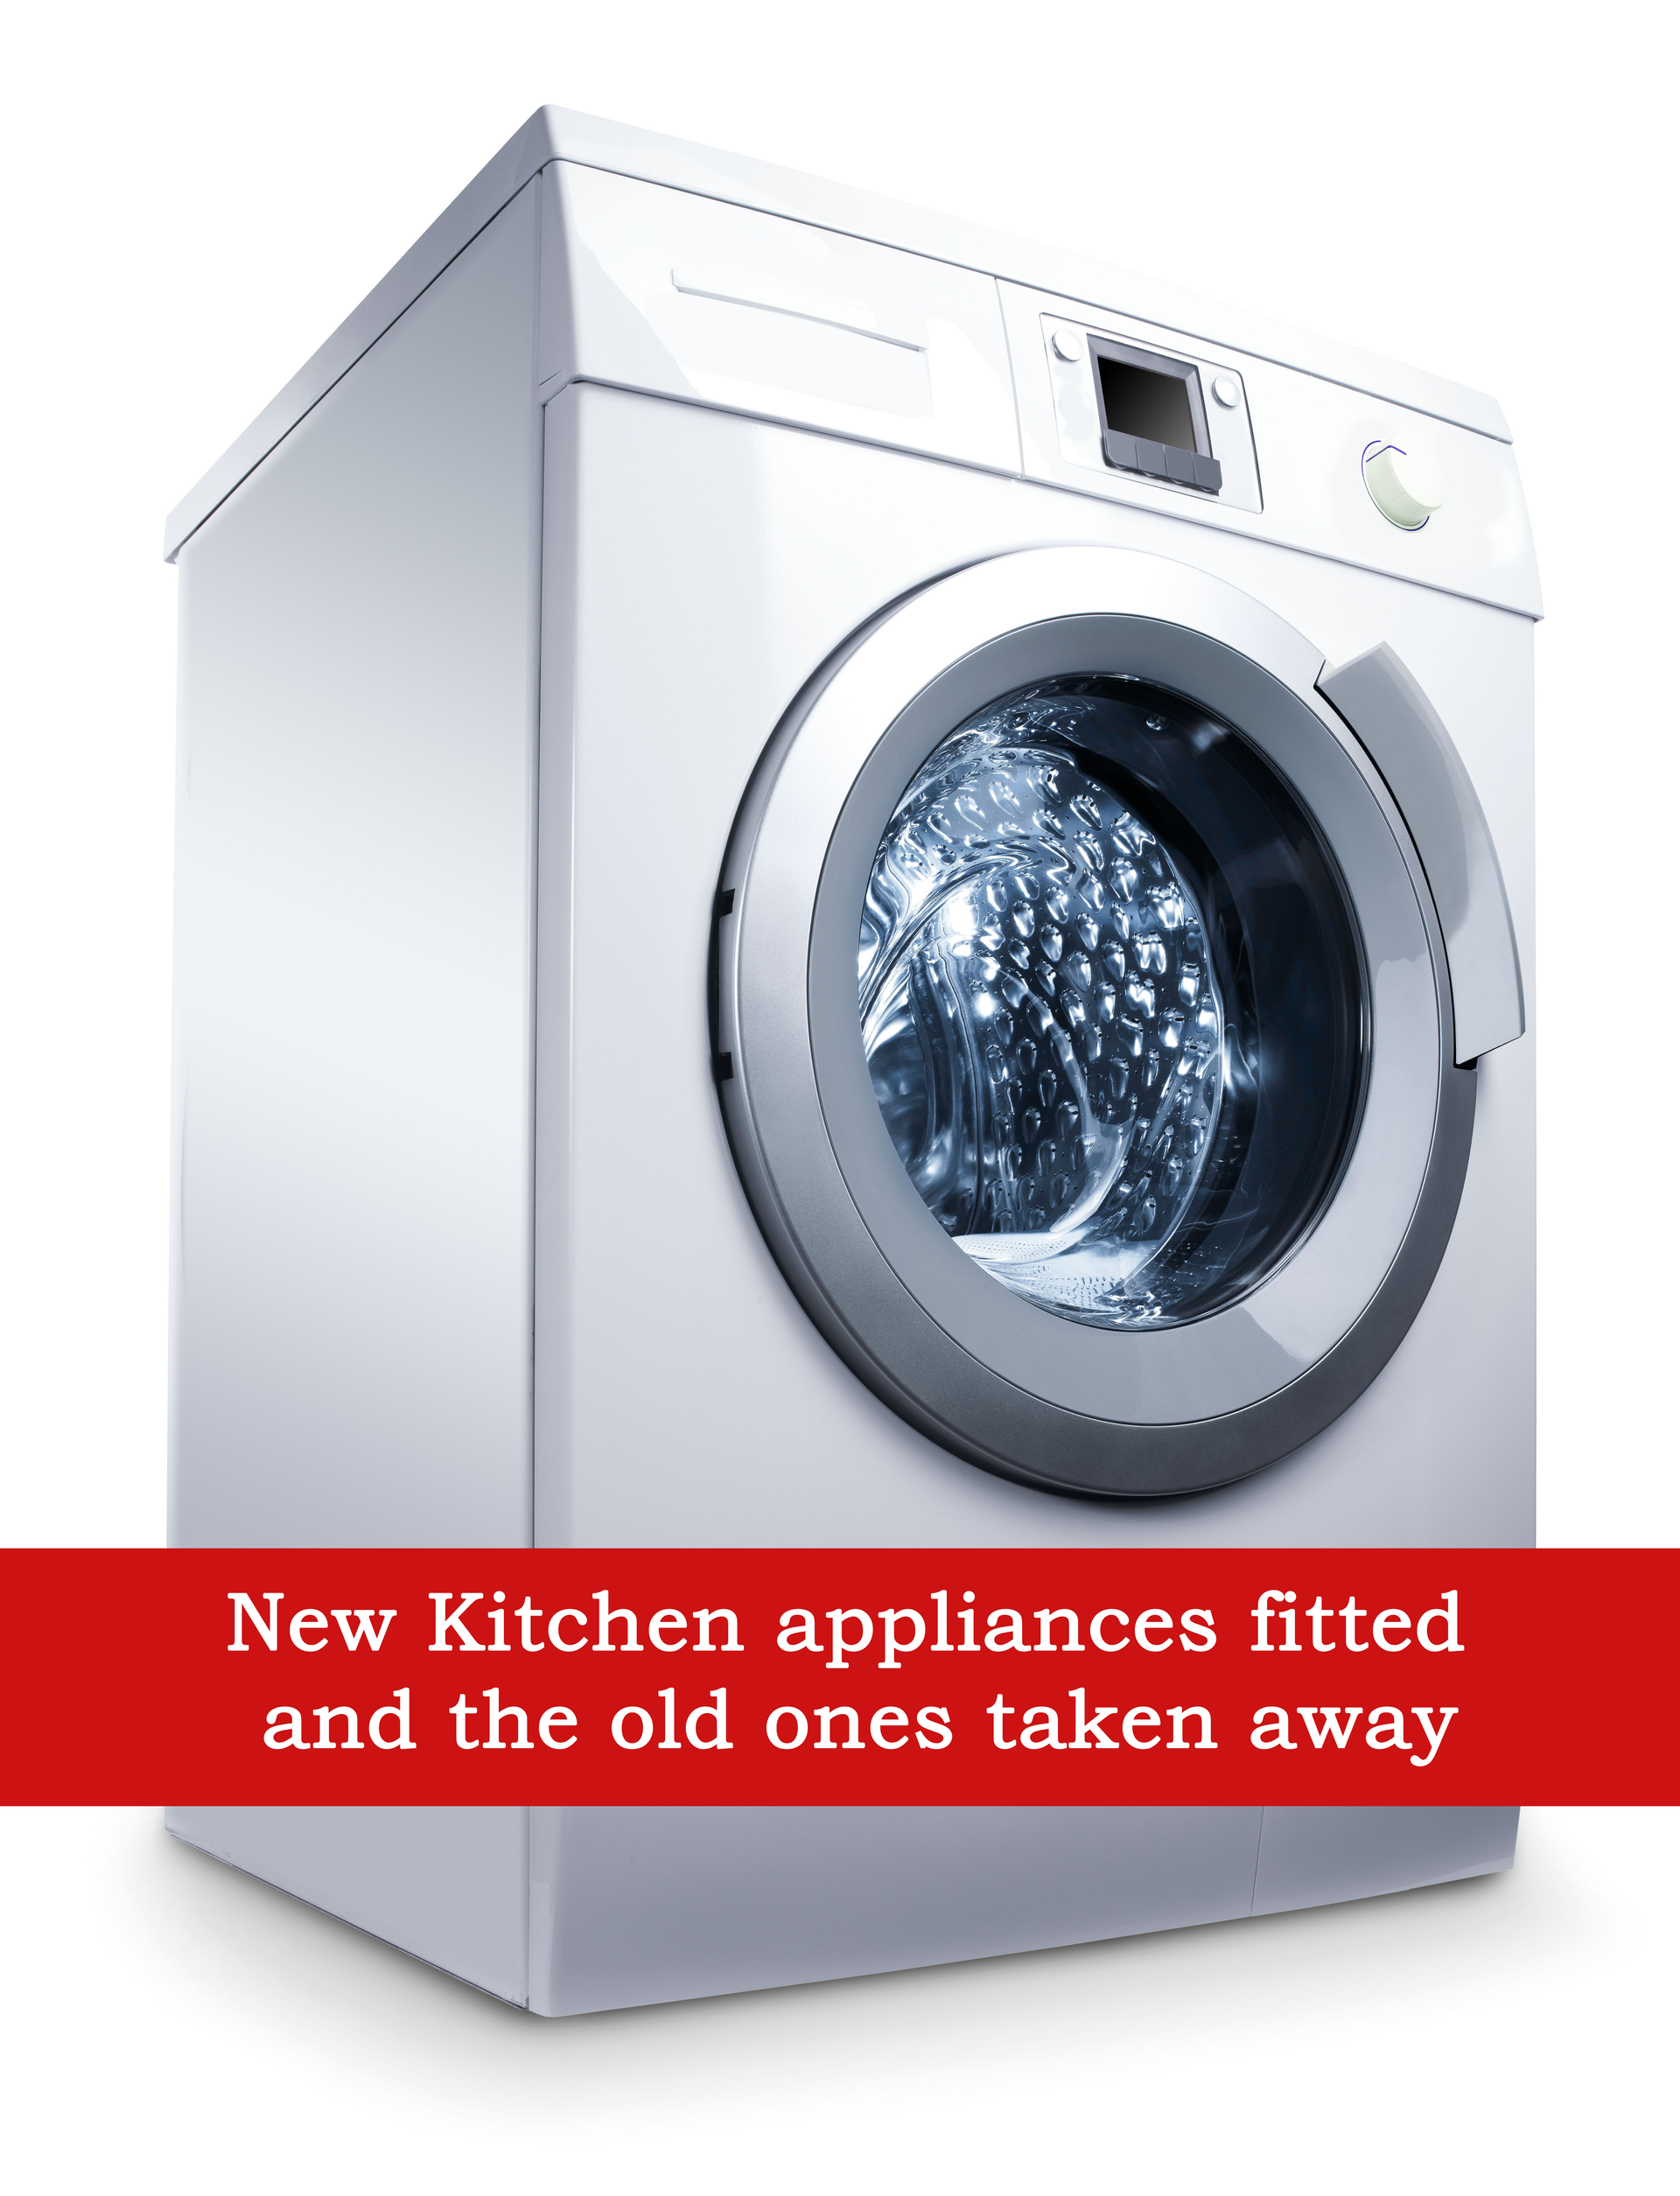 Washing Machines, washing machine repairs, oven repairs, dishwasher repairs, cooker repairs, fridge repairs